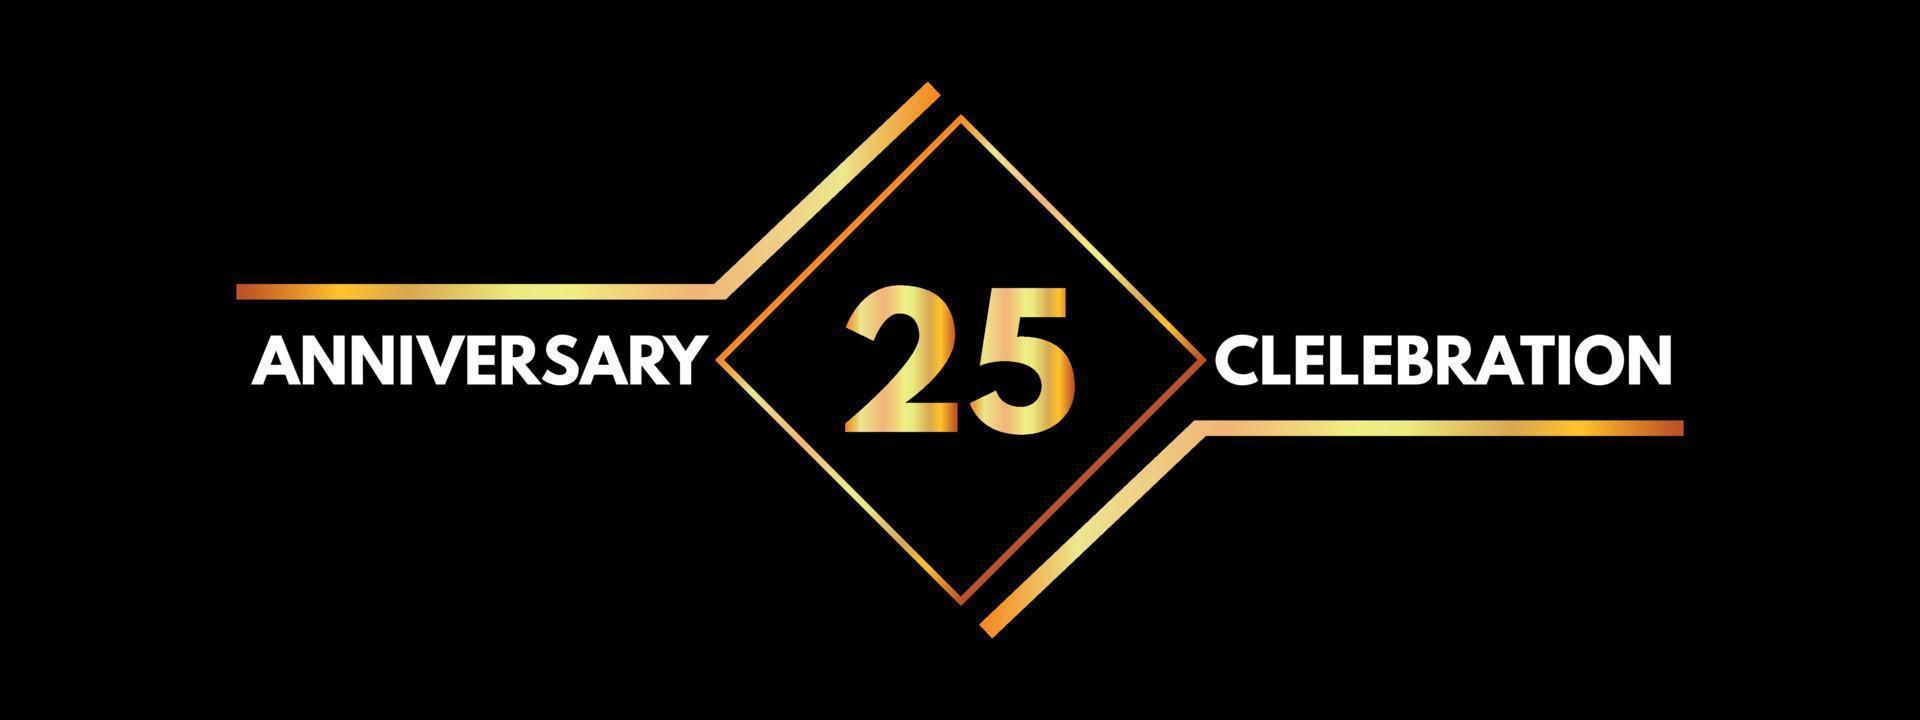 25 Jahre Jubiläumsfeier mit Goldrahmen isoliert auf schwarzem Hintergrund. vektordesign für grußkarte, geburtstagsfeier, hochzeit, eventparty, einladung, zeremonie. Logo zum 25-jährigen Jubiläum. vektor